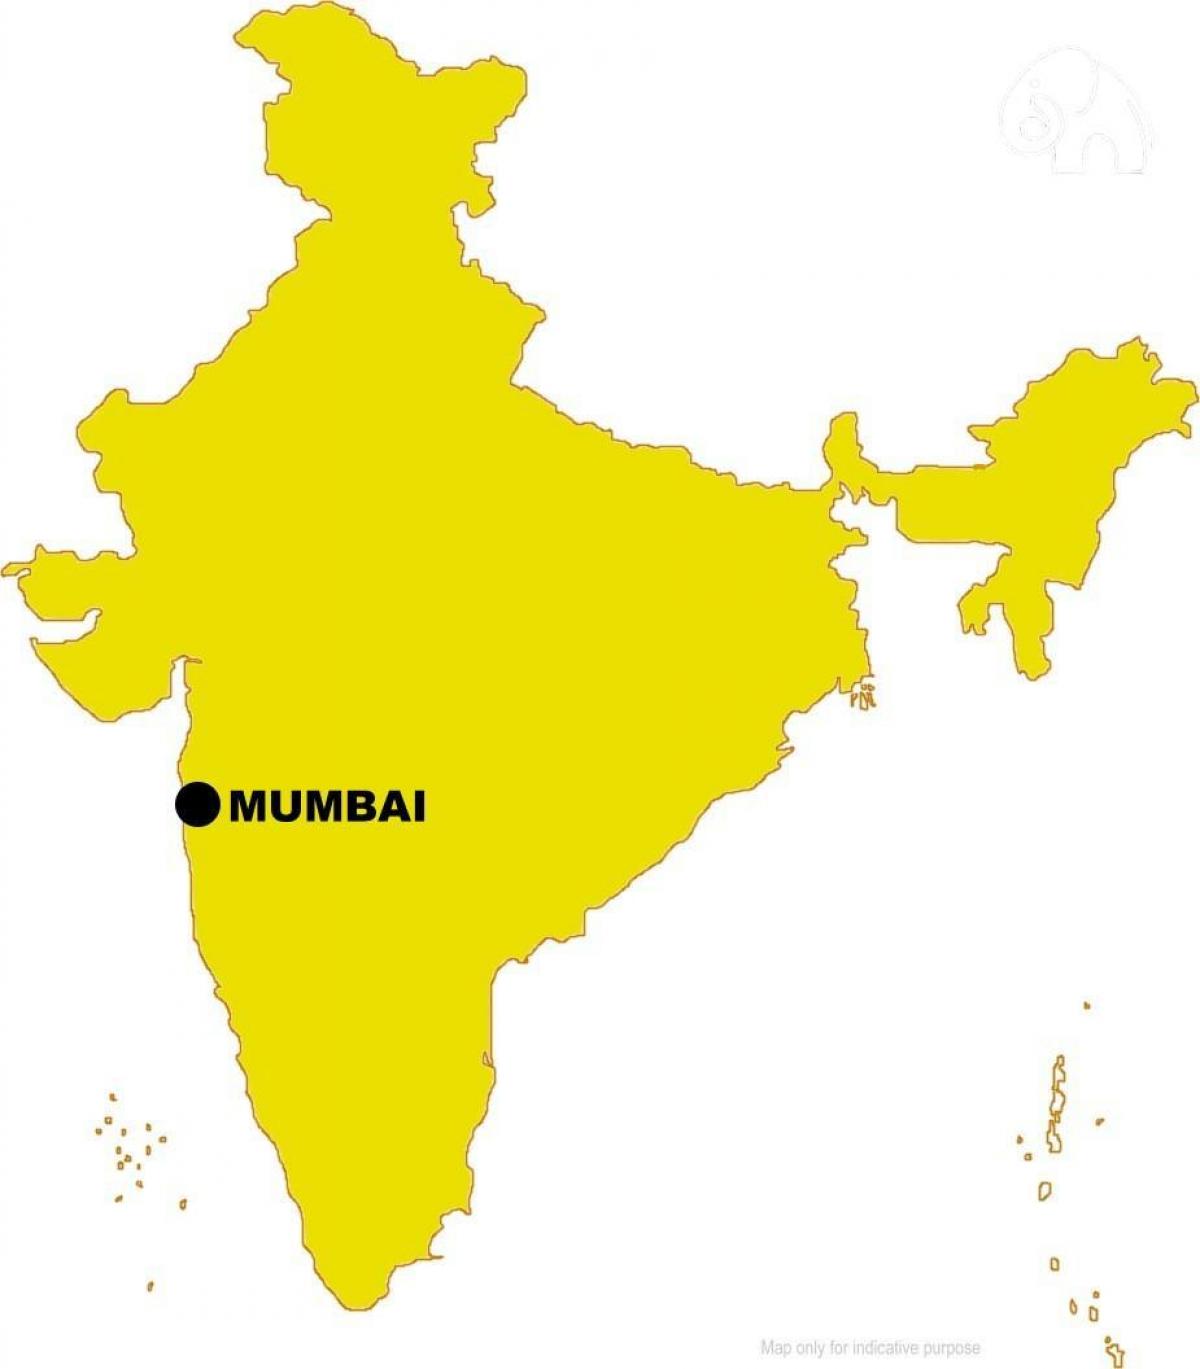 Мумбаї на карті